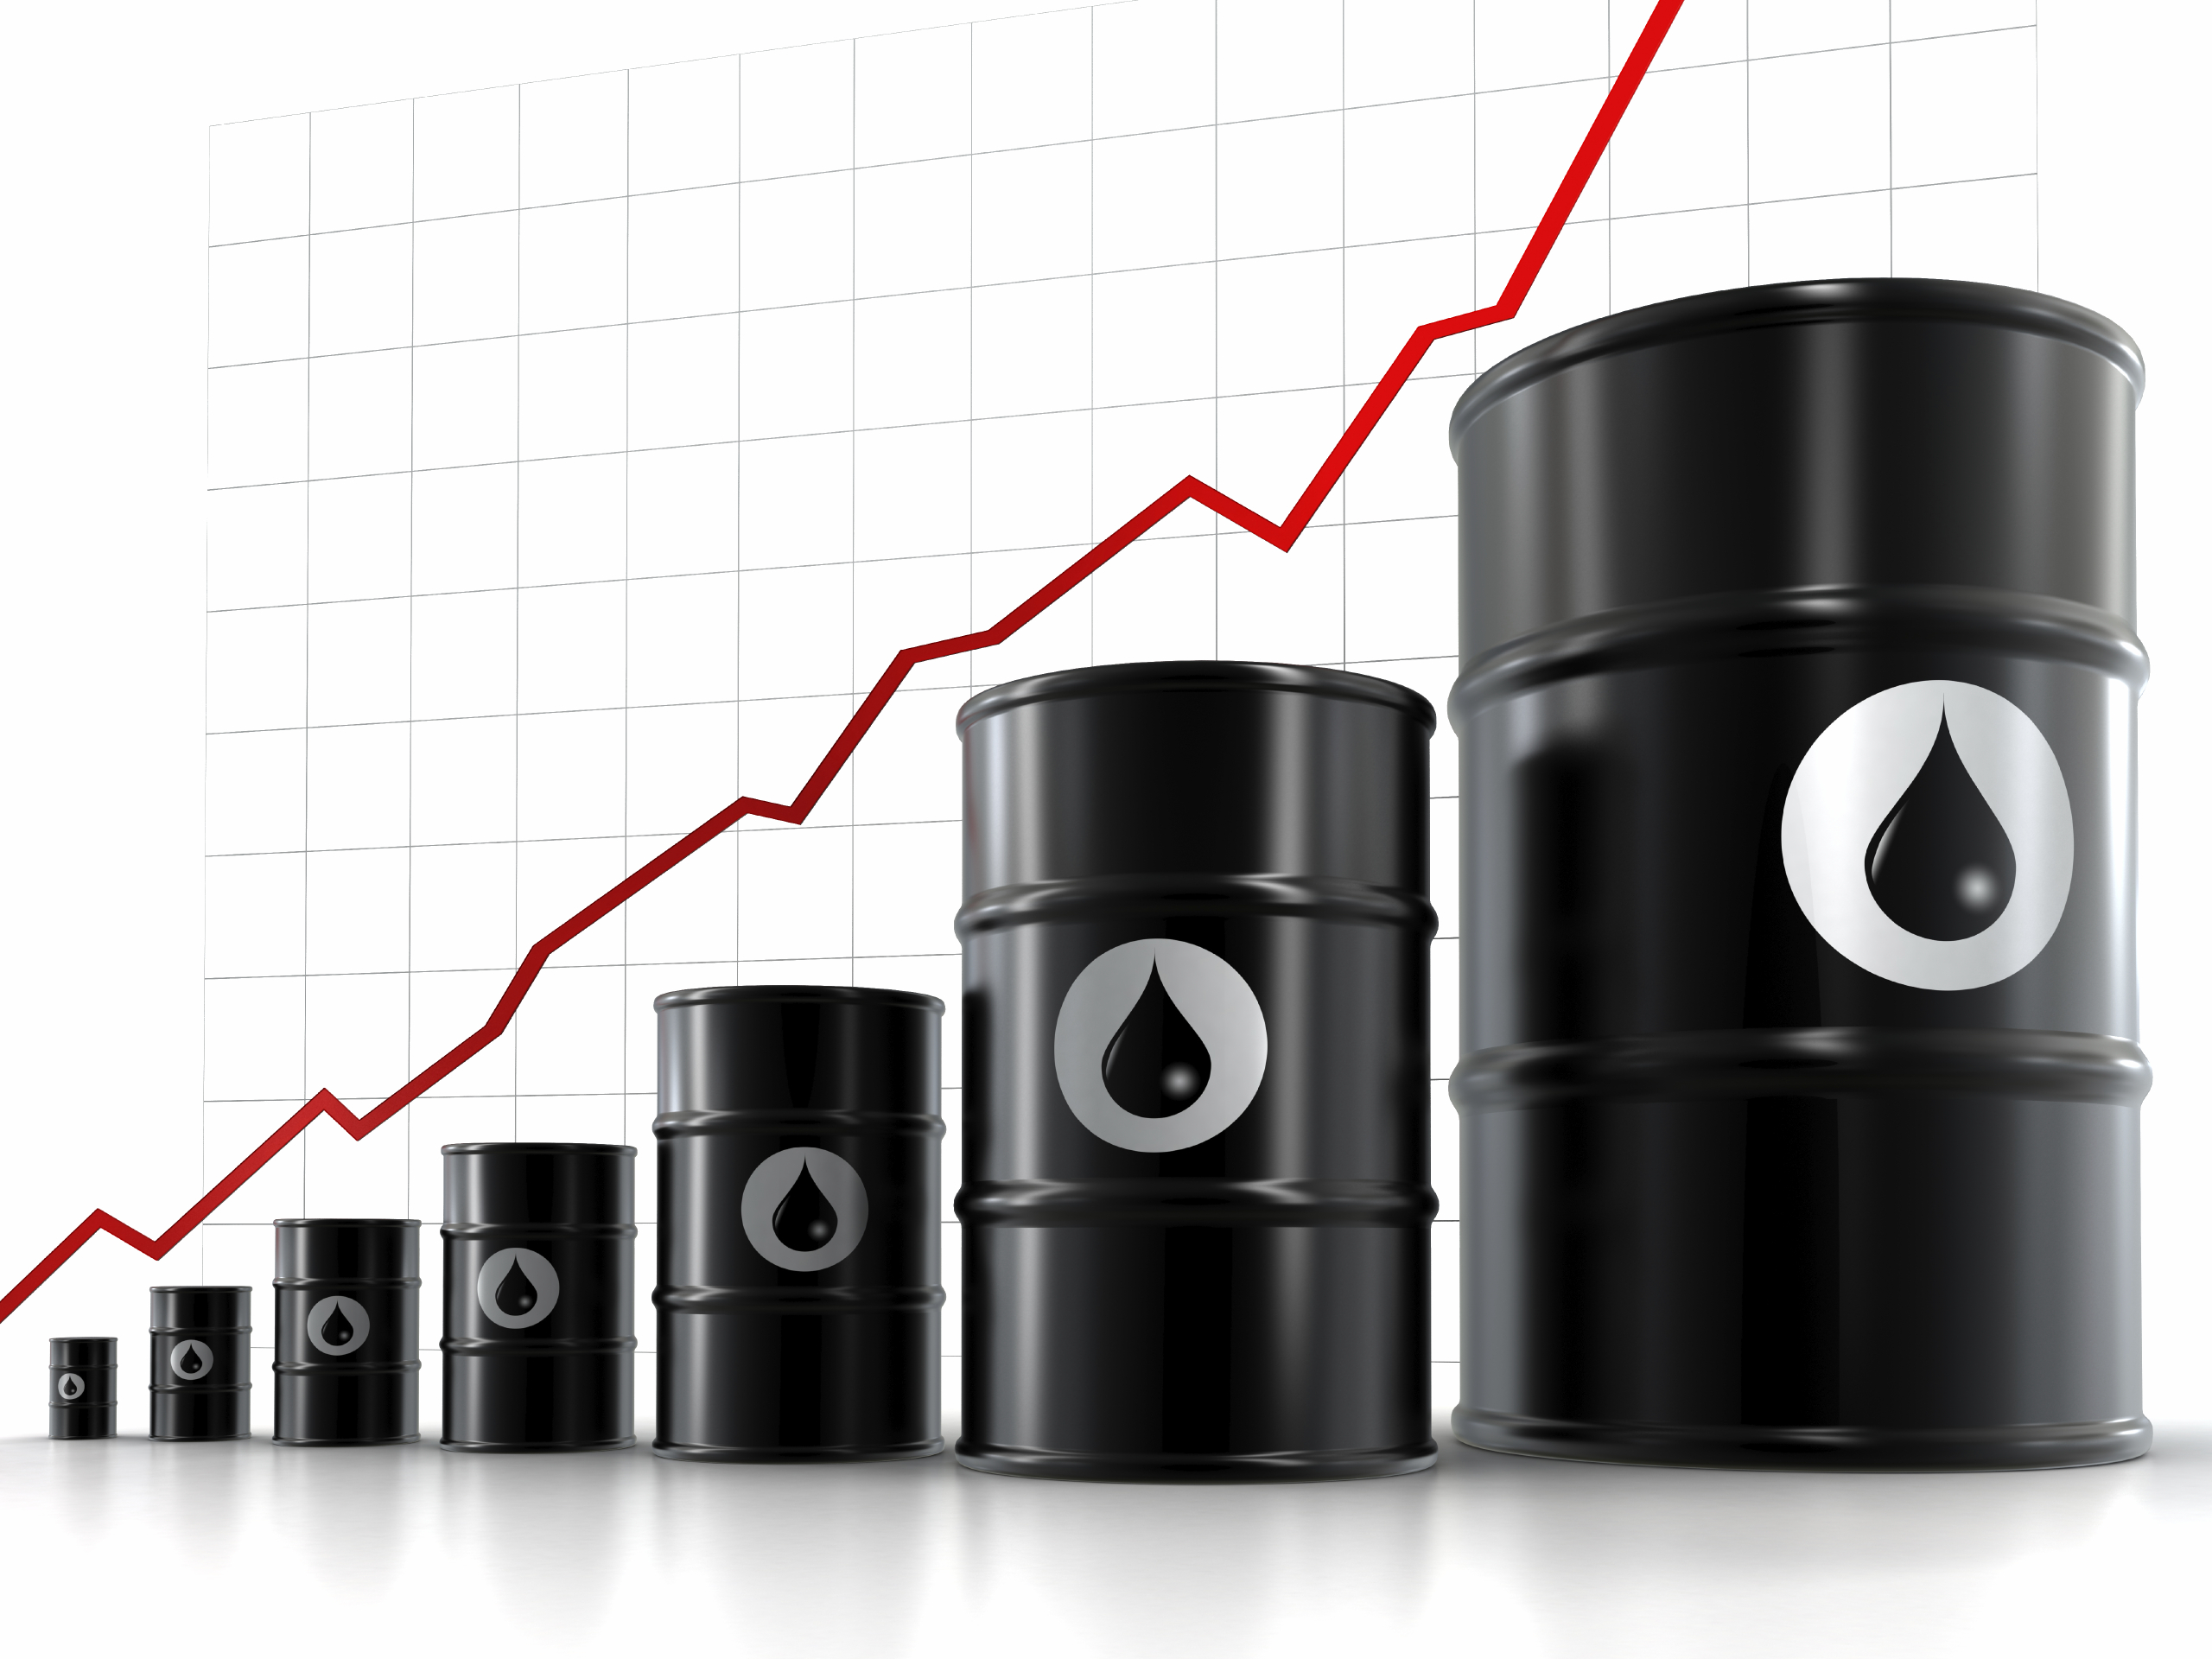 کاهش ۱.۵ میلیون بشکه نفت؛ پیشنهاد اوپک به متحدان